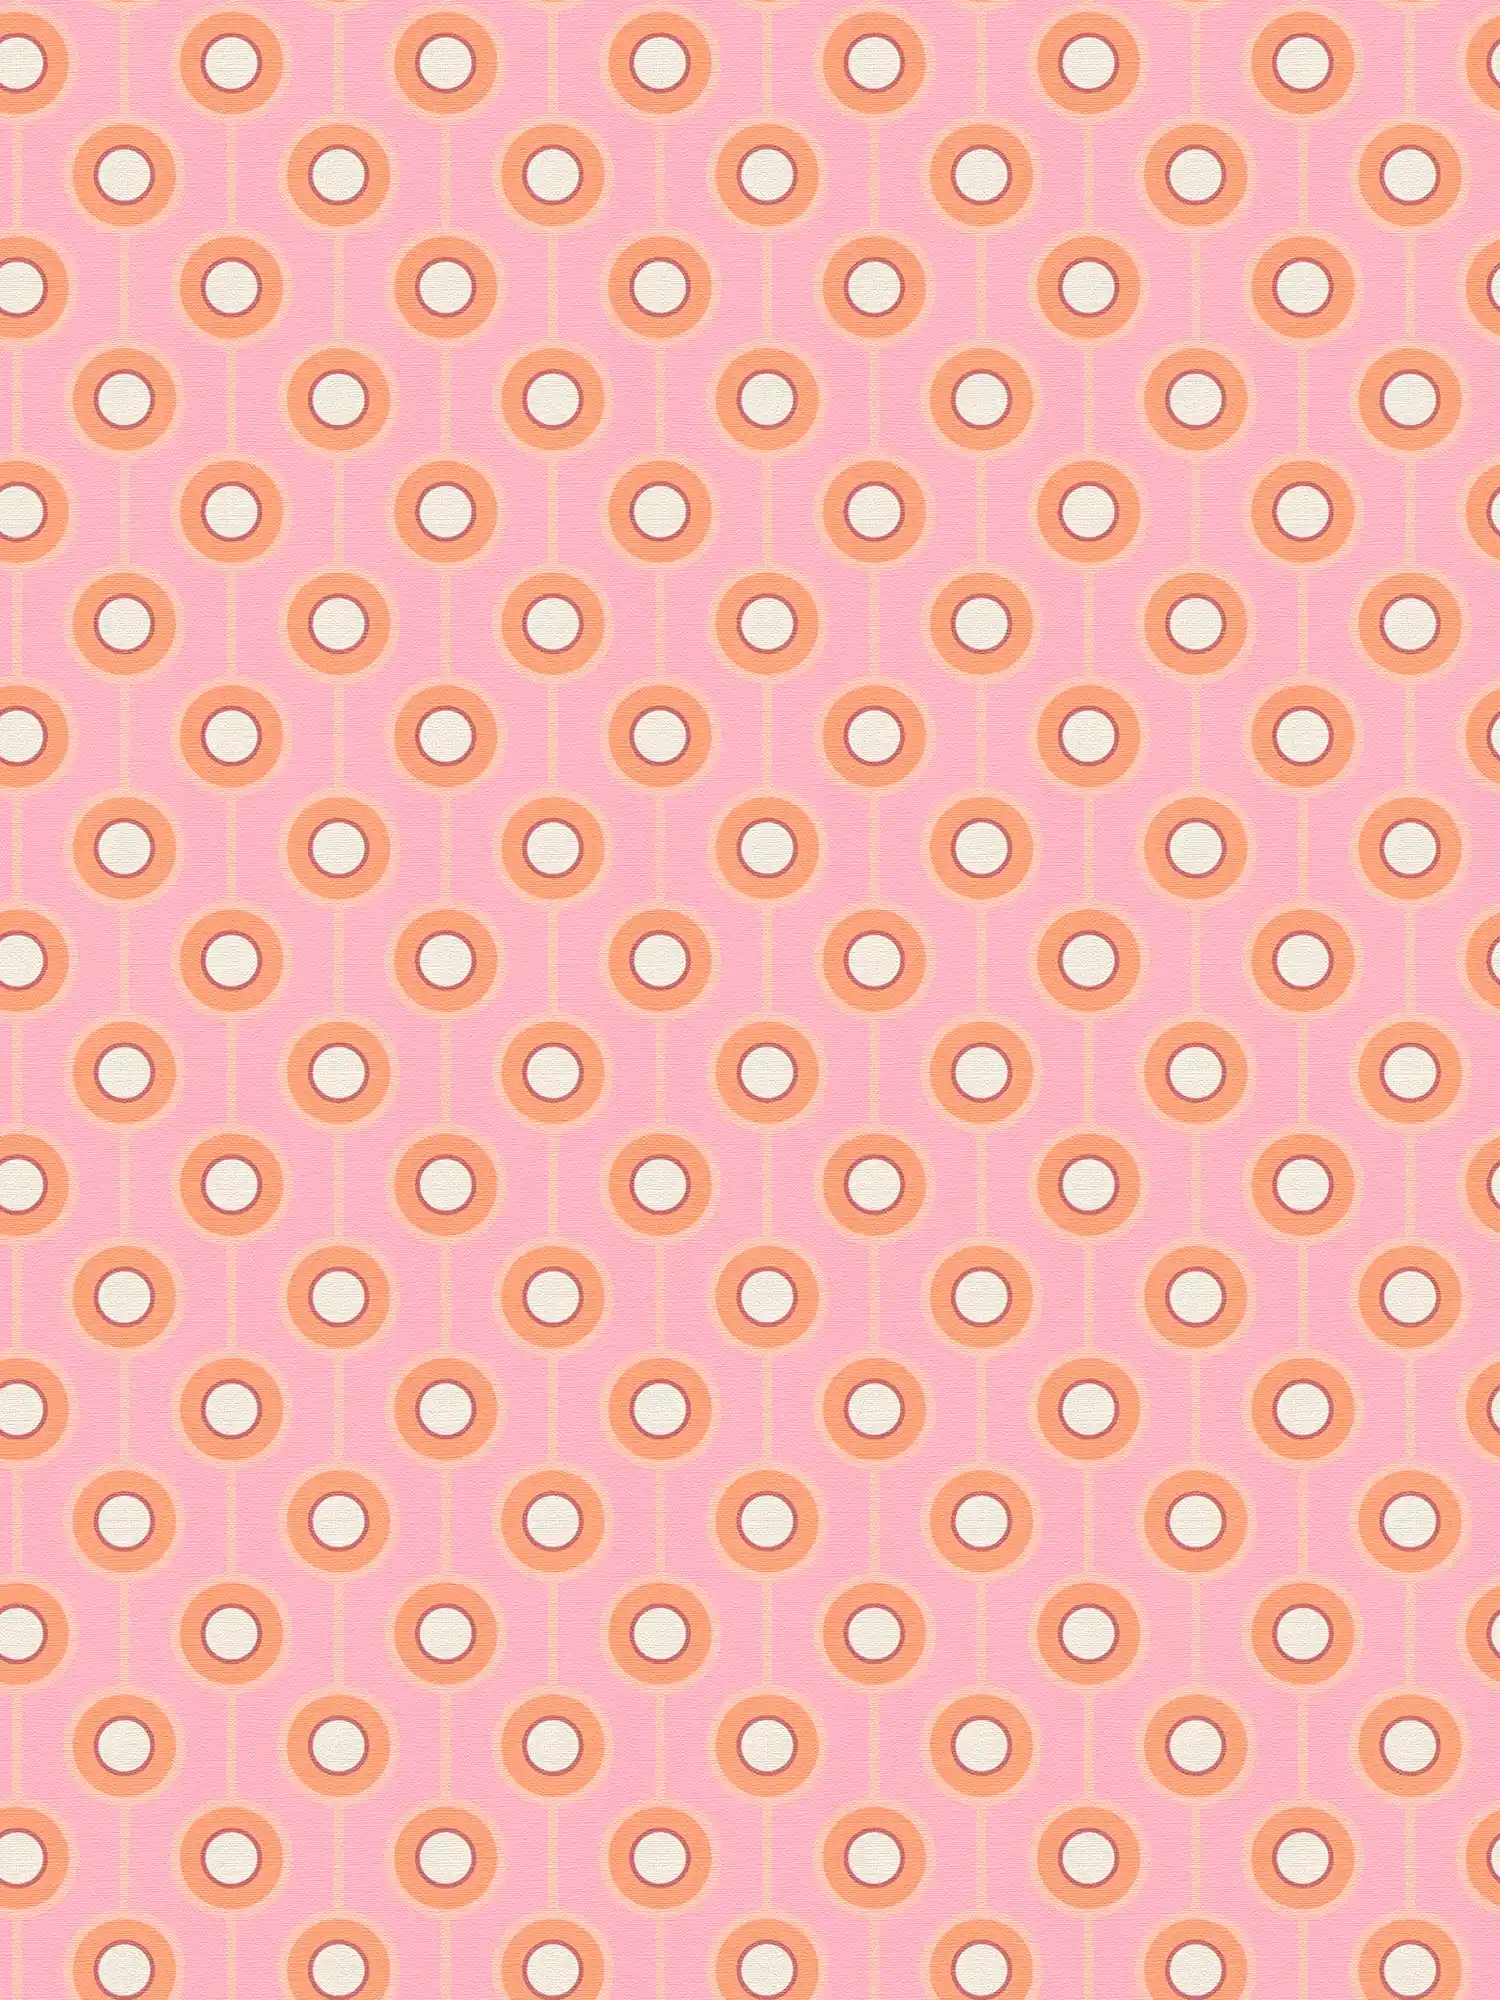 papier peint en papier légèrement structuré avec motifs circulaires - rose, orange, beige
